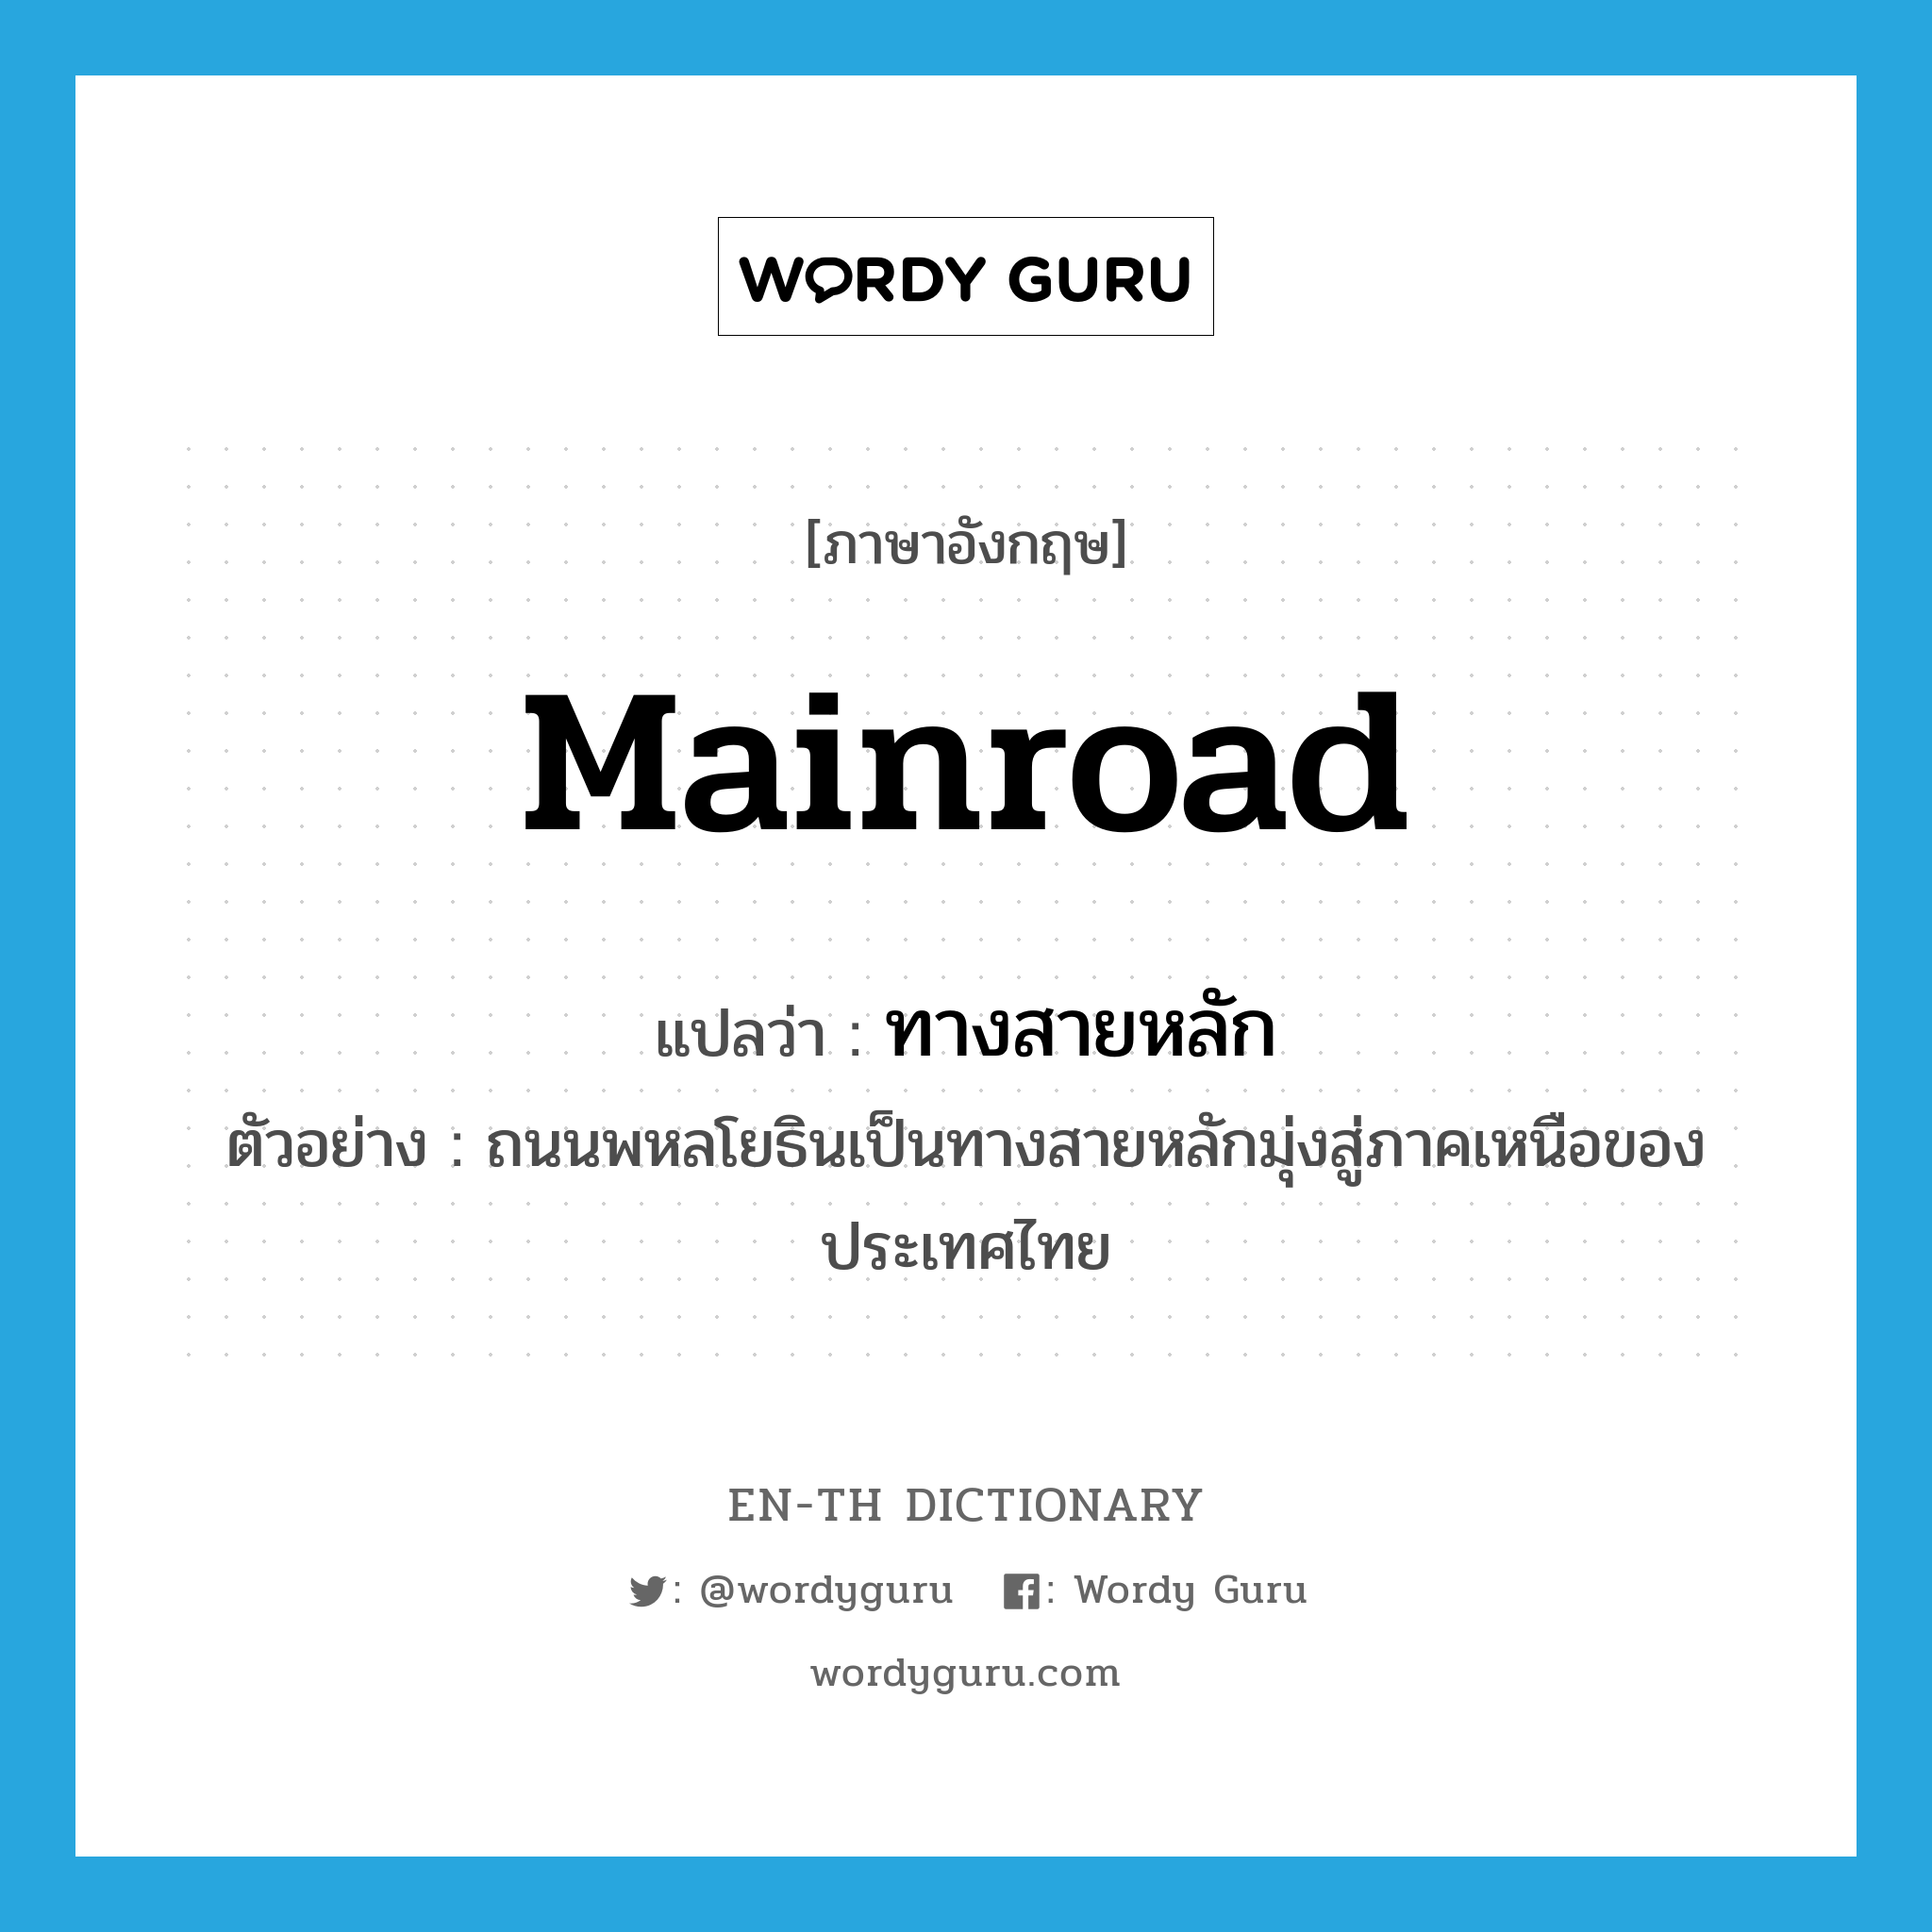 mainroad แปลว่า?, คำศัพท์ภาษาอังกฤษ mainroad แปลว่า ทางสายหลัก ประเภท N ตัวอย่าง ถนนพหลโยธินเป็นทางสายหลักมุ่งสู่ภาคเหนือของประเทศไทย หมวด N